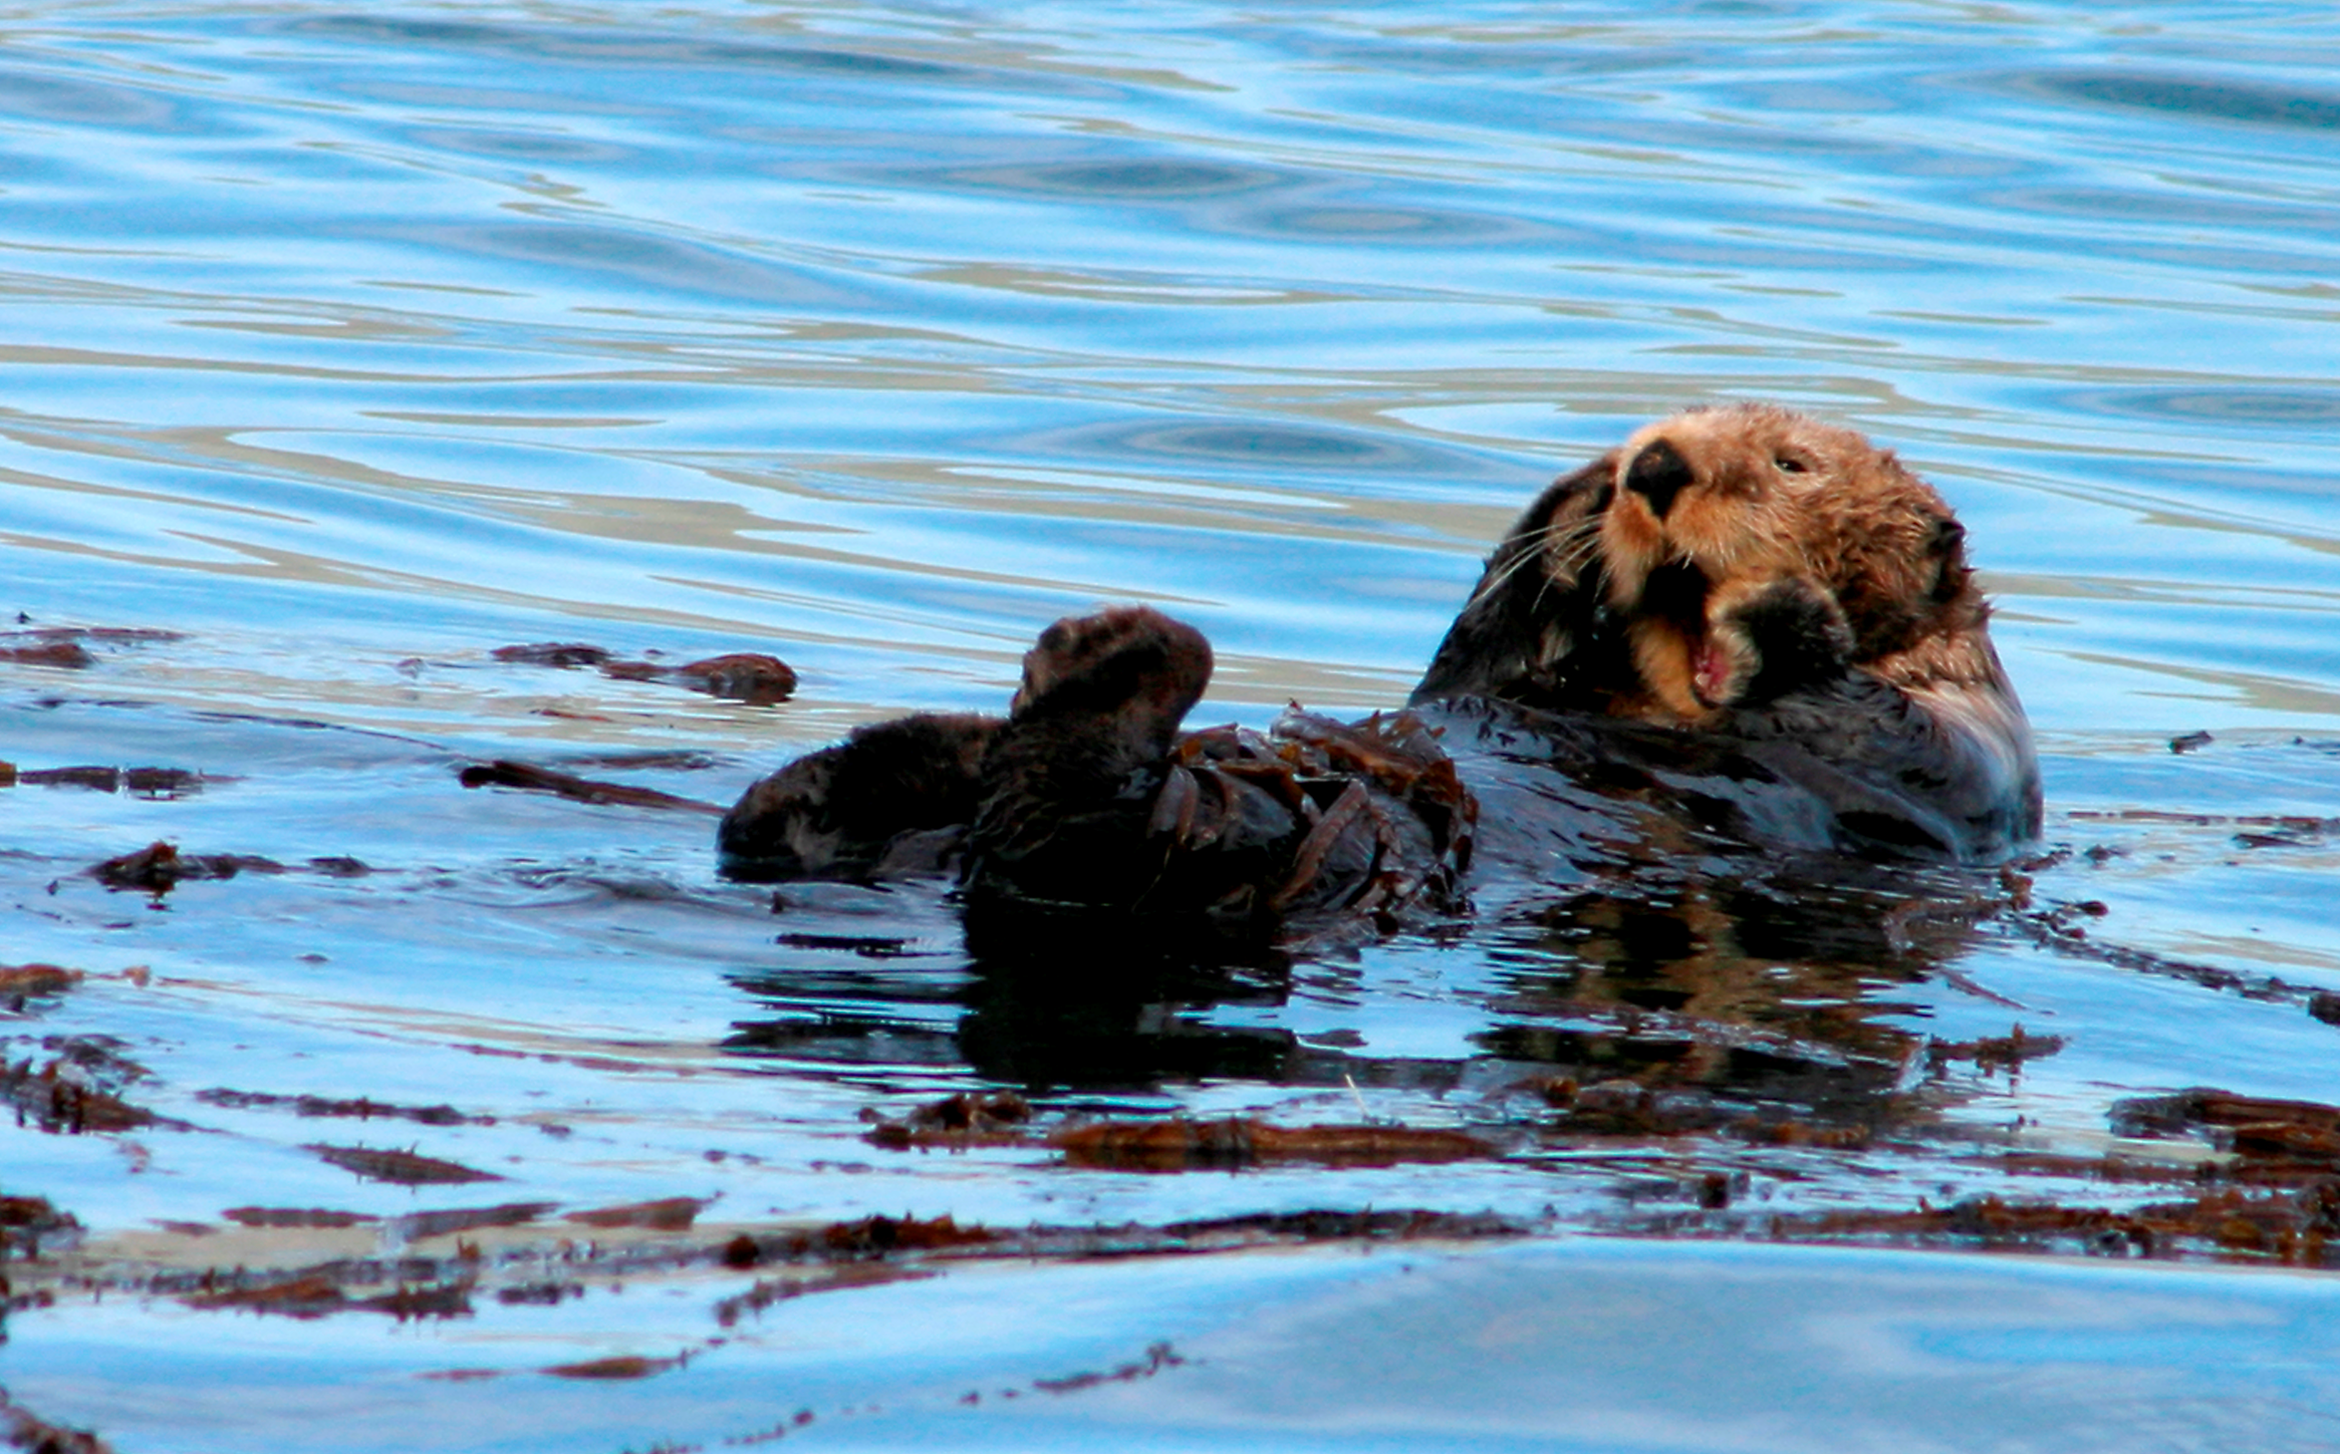 Otter (Photo courtesy of CVB)